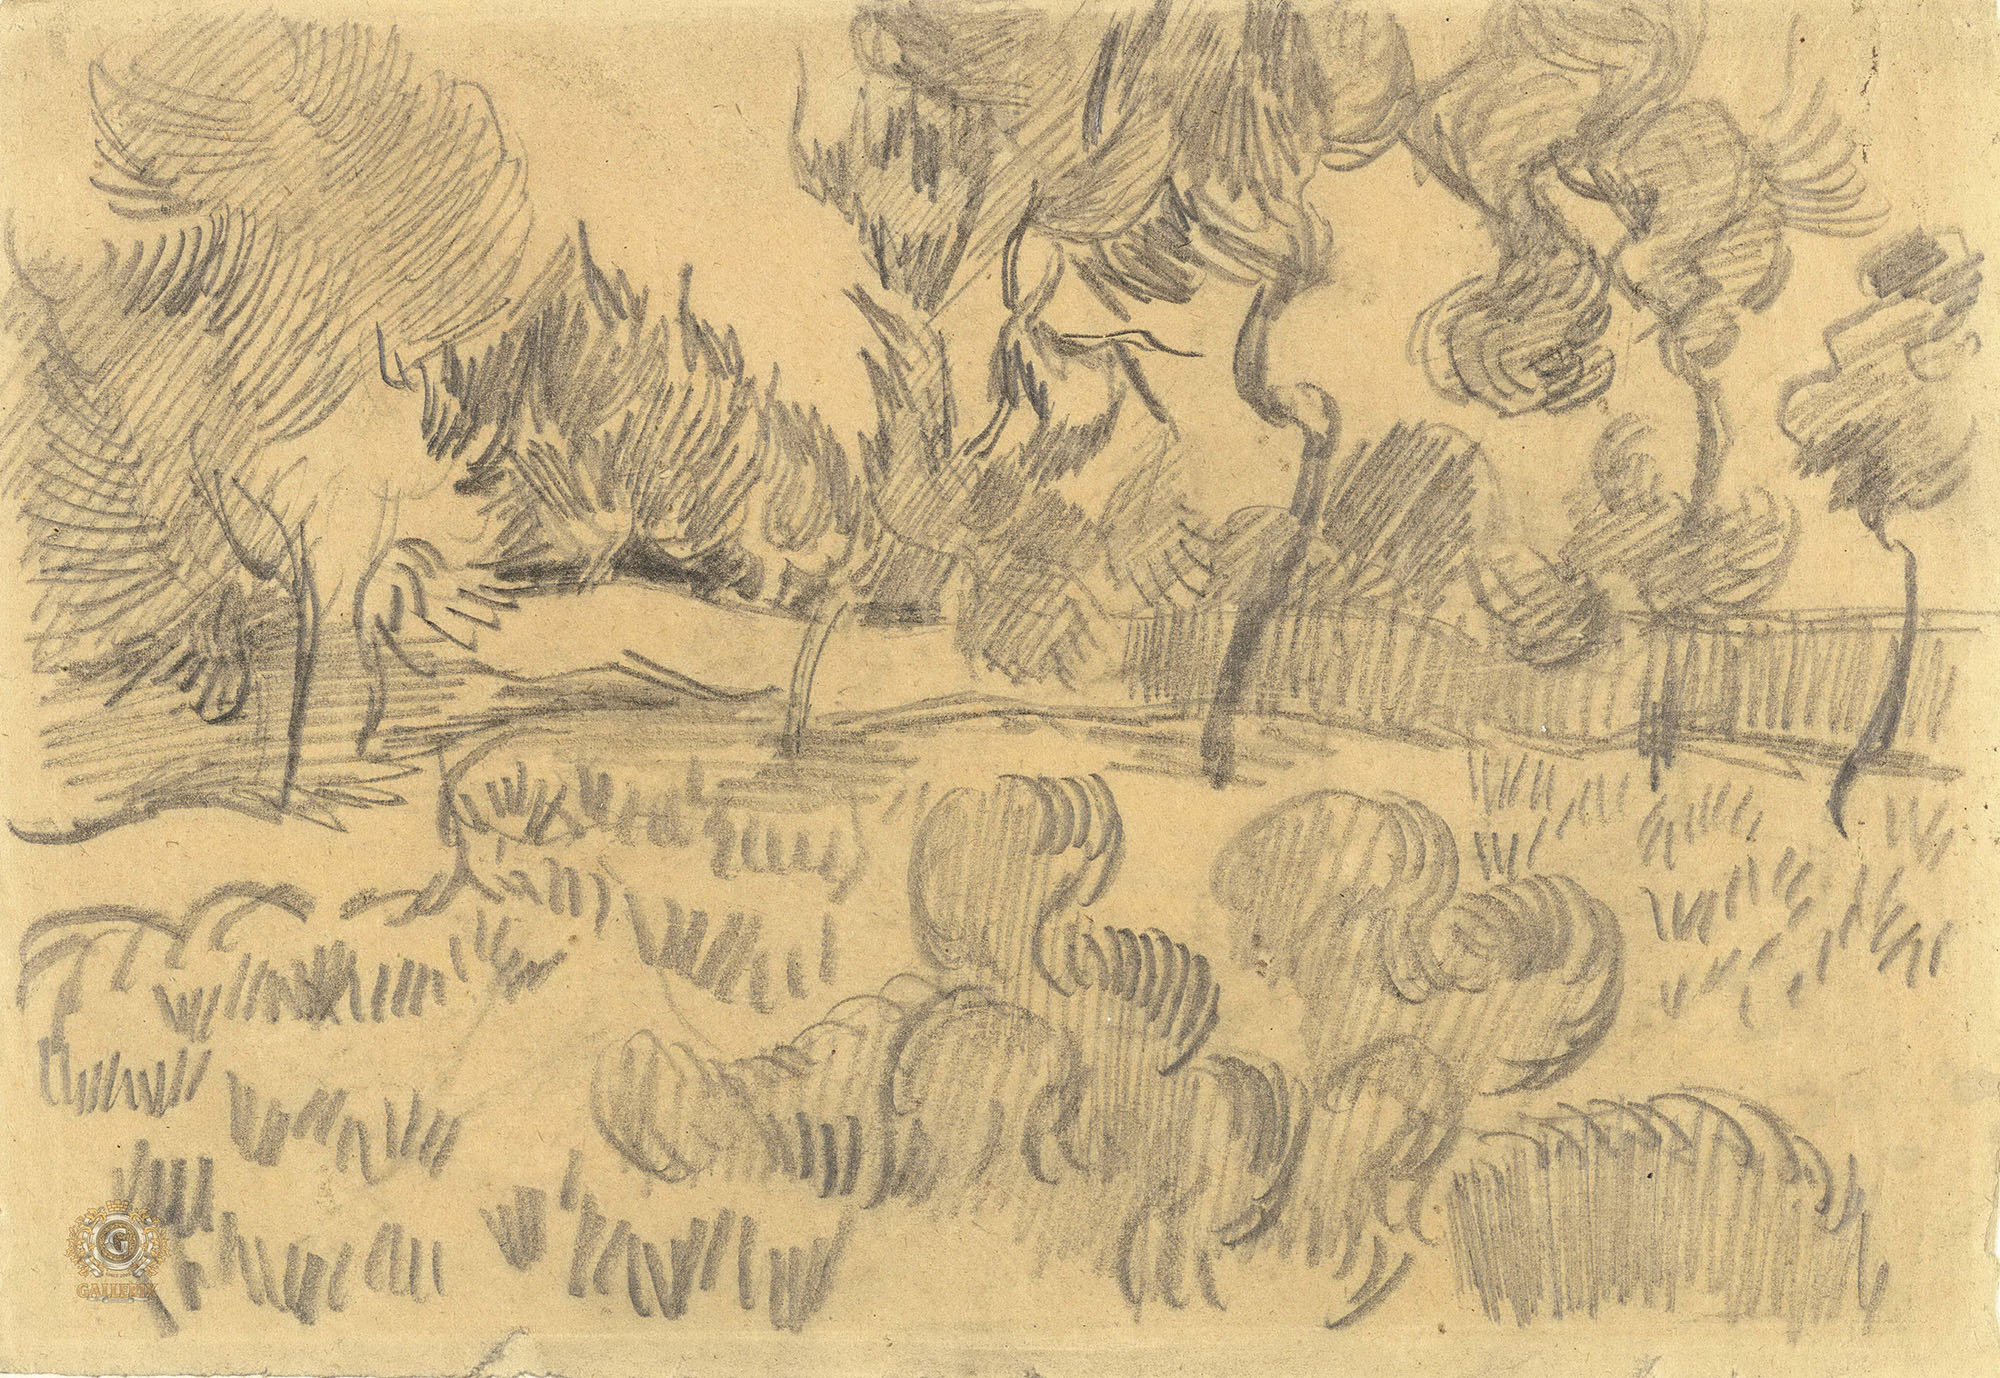 Винсент Ван Гог. "Деревья в саду лечебницы". 1889. Музей Ван Гога, Амстердам.